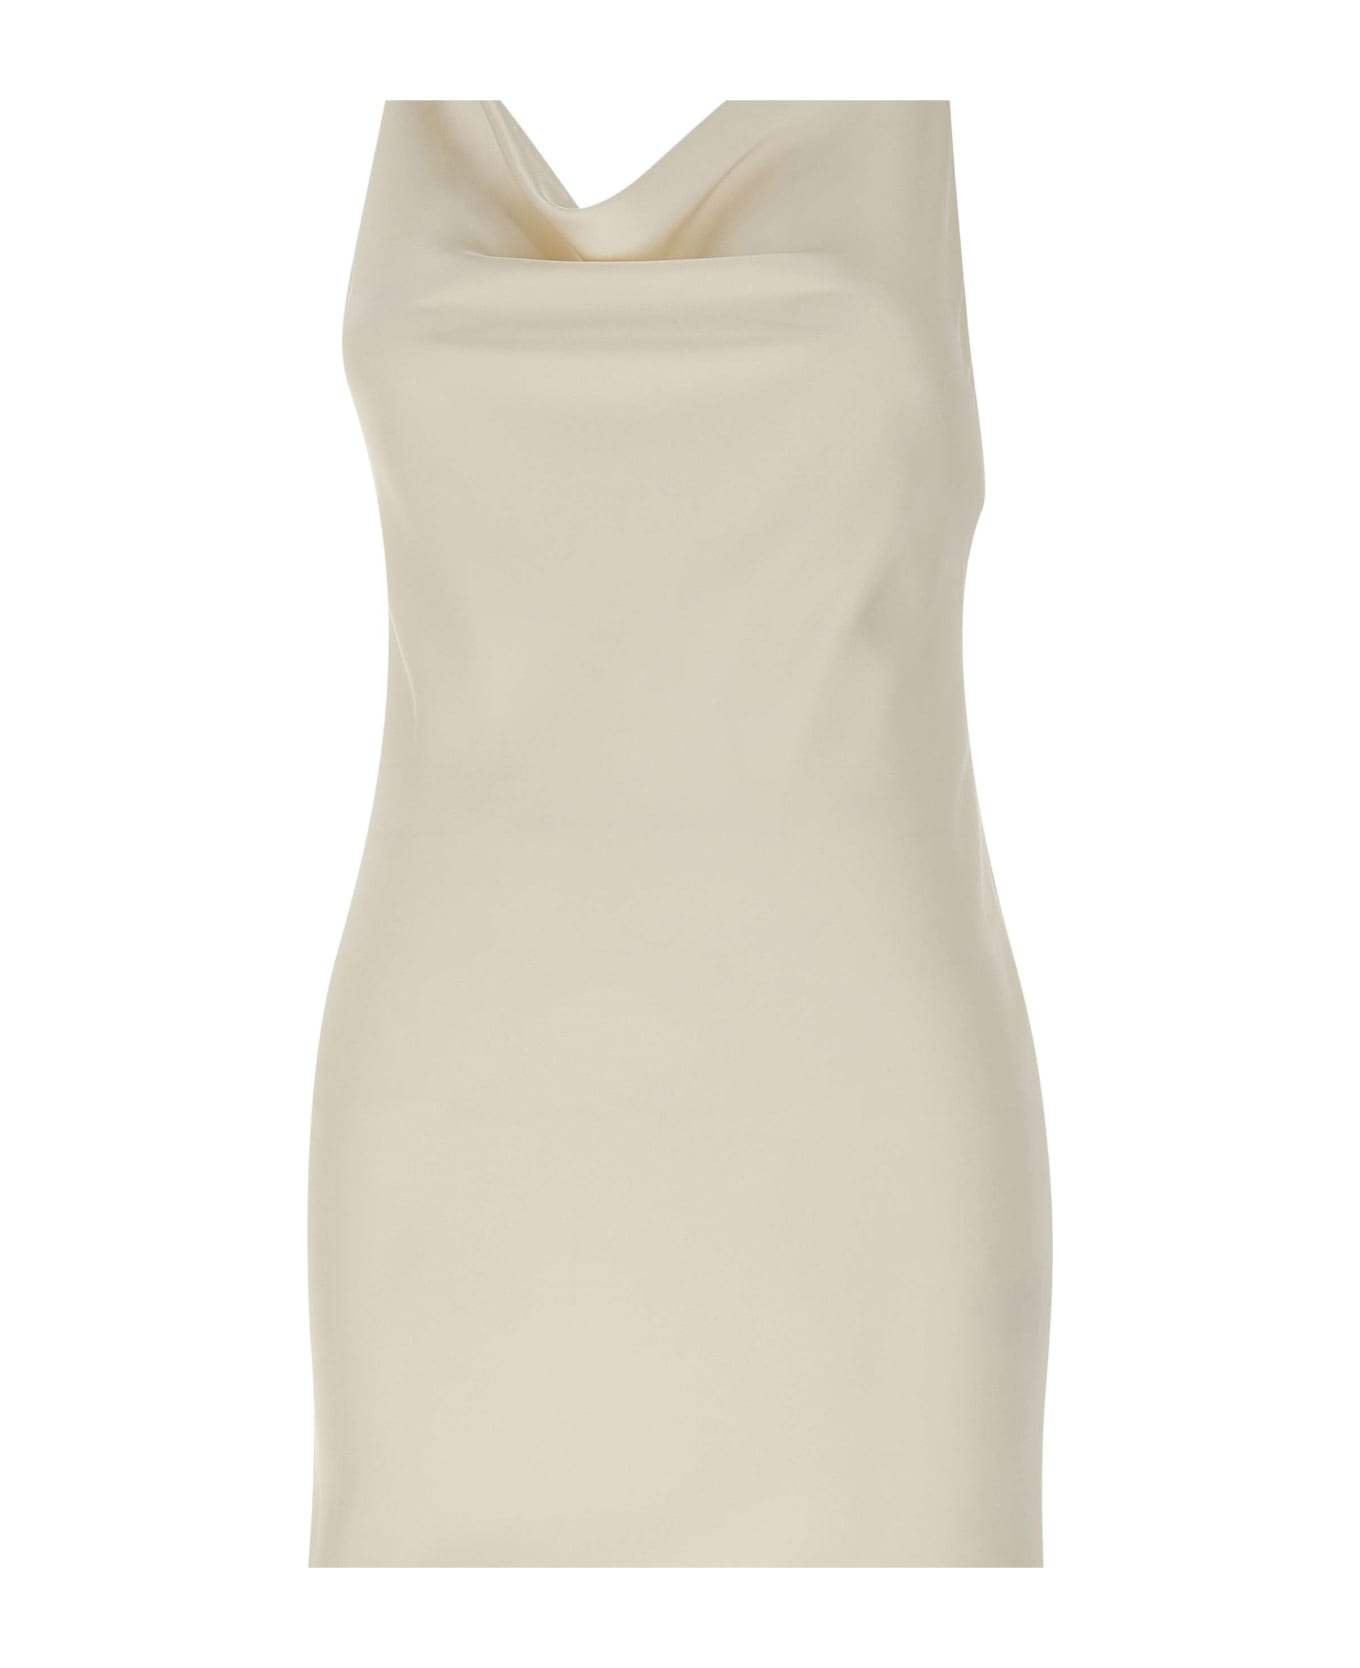 Rotate by Birger Christensen "satin Mini Slip" Dress - WHITE